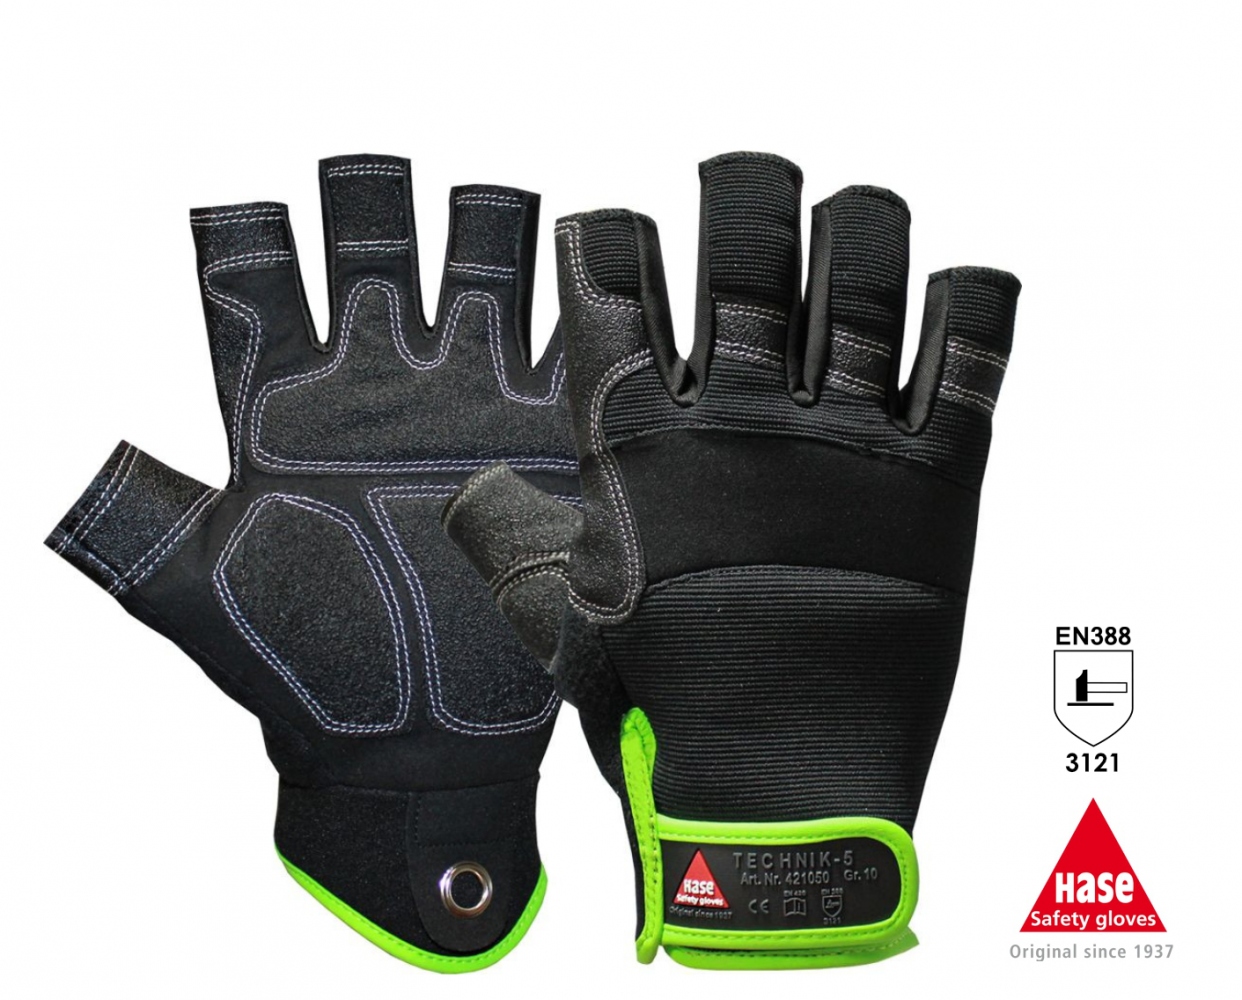 pics/hase-safety-gloves/hase-421050-technik-5-finger-handschuhe.jpg